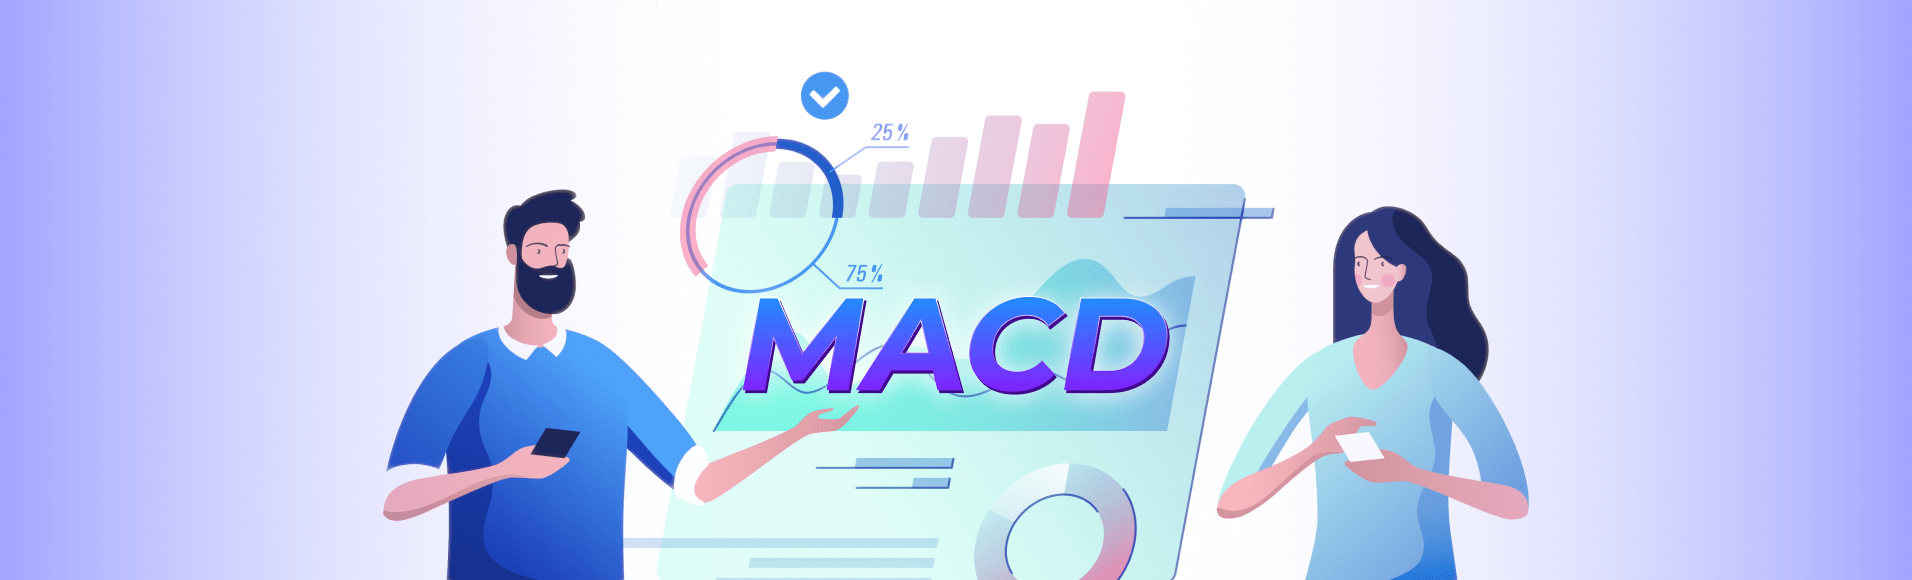 MACD tuyệt vời: lợi nhuận tùy chọn nhị phân đơn giản